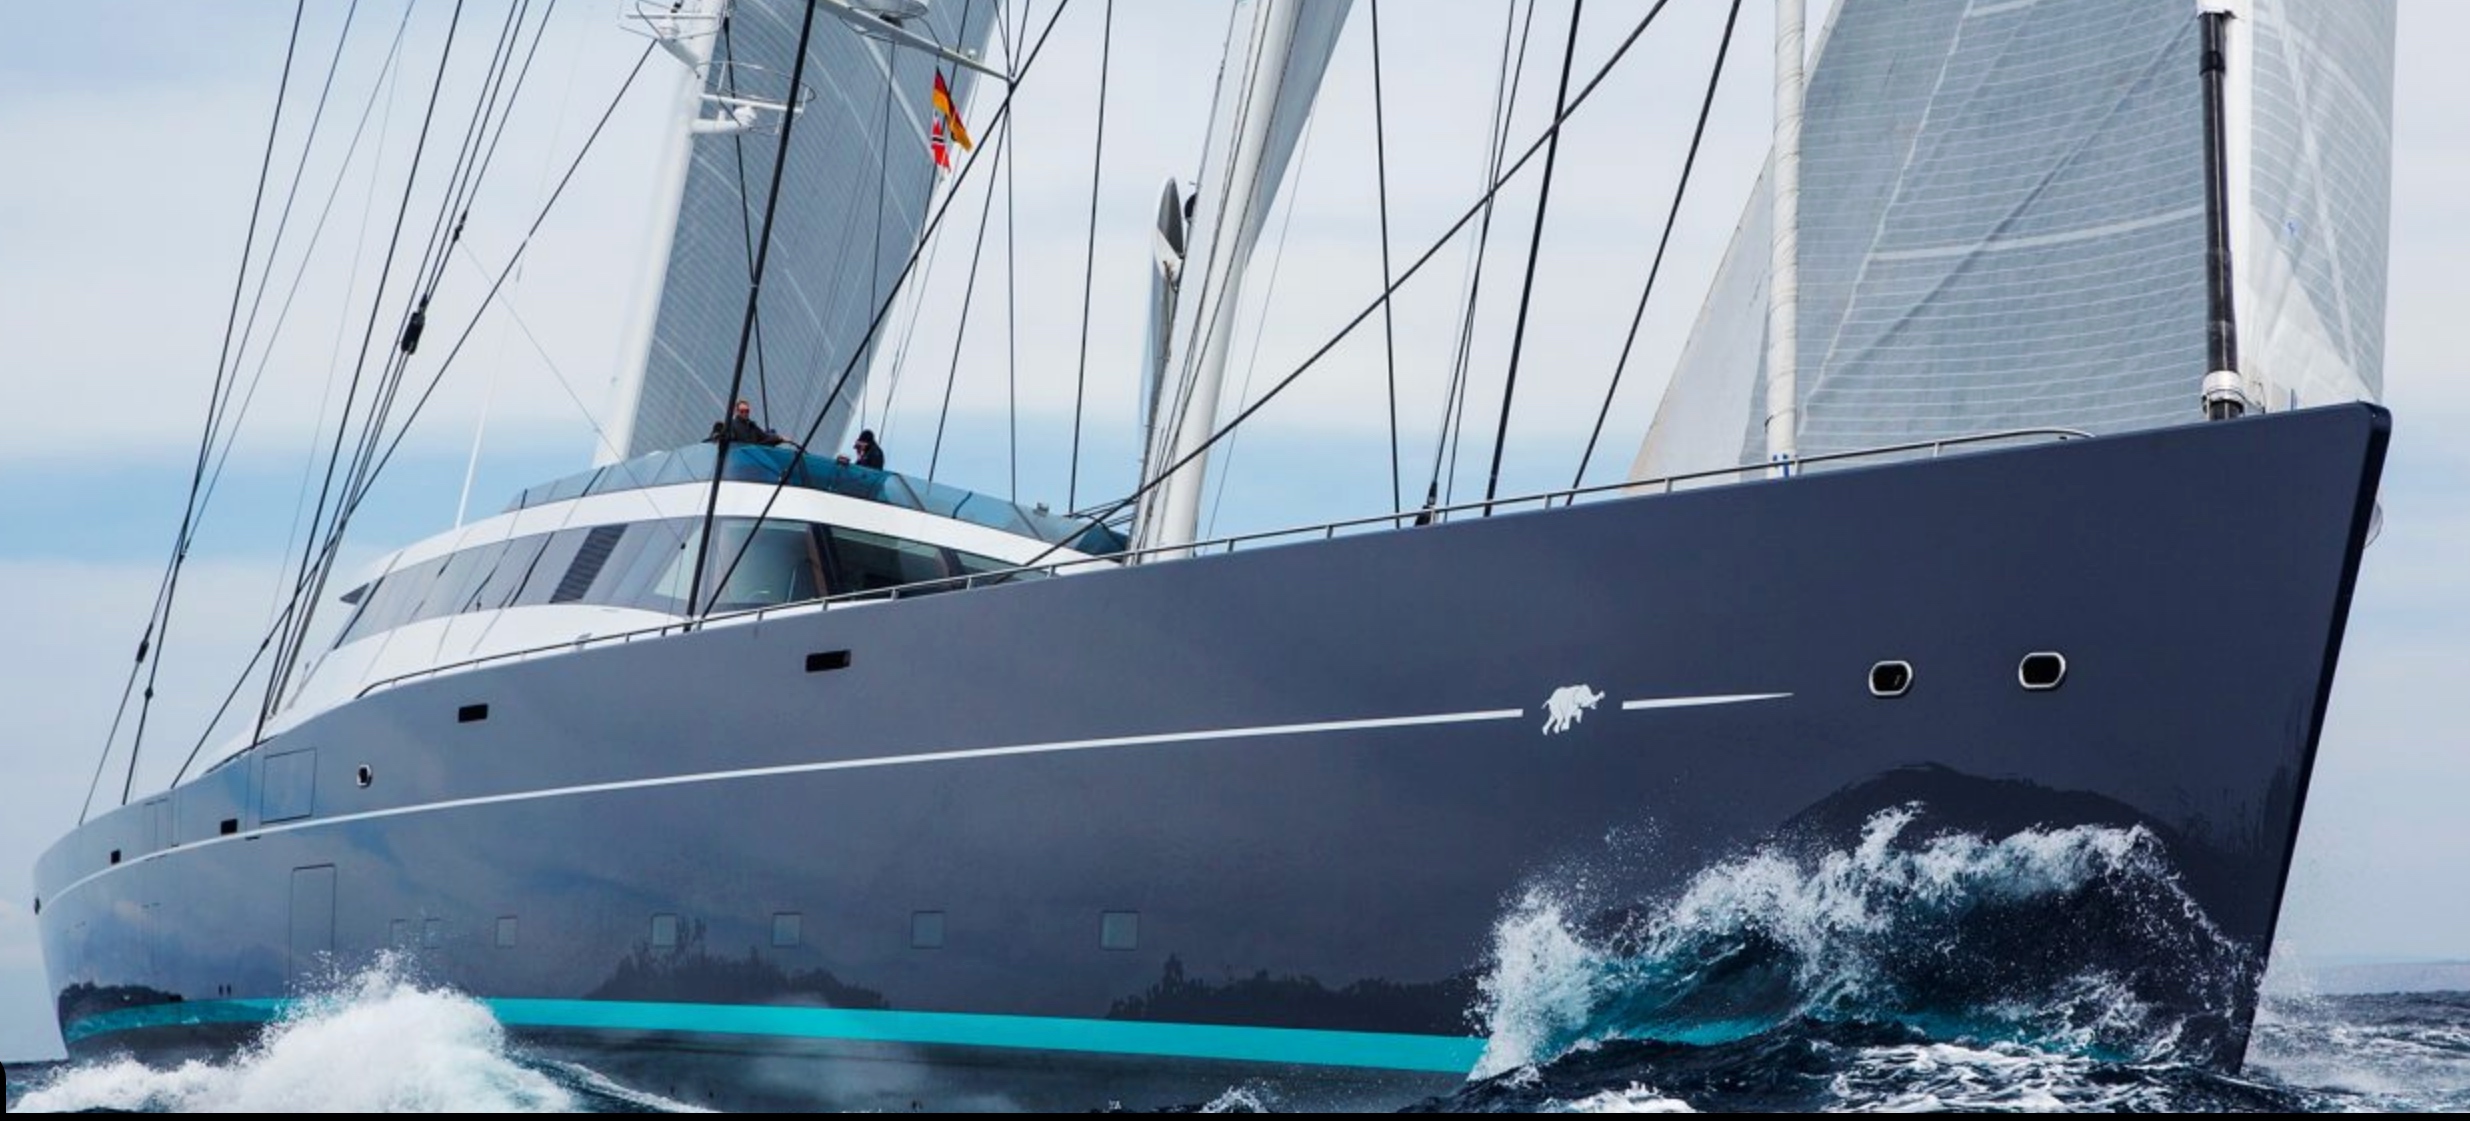 El velero “Aquijo”, valuado en 100 mdd, se encuentra en la bahía de Cabo San Lucas